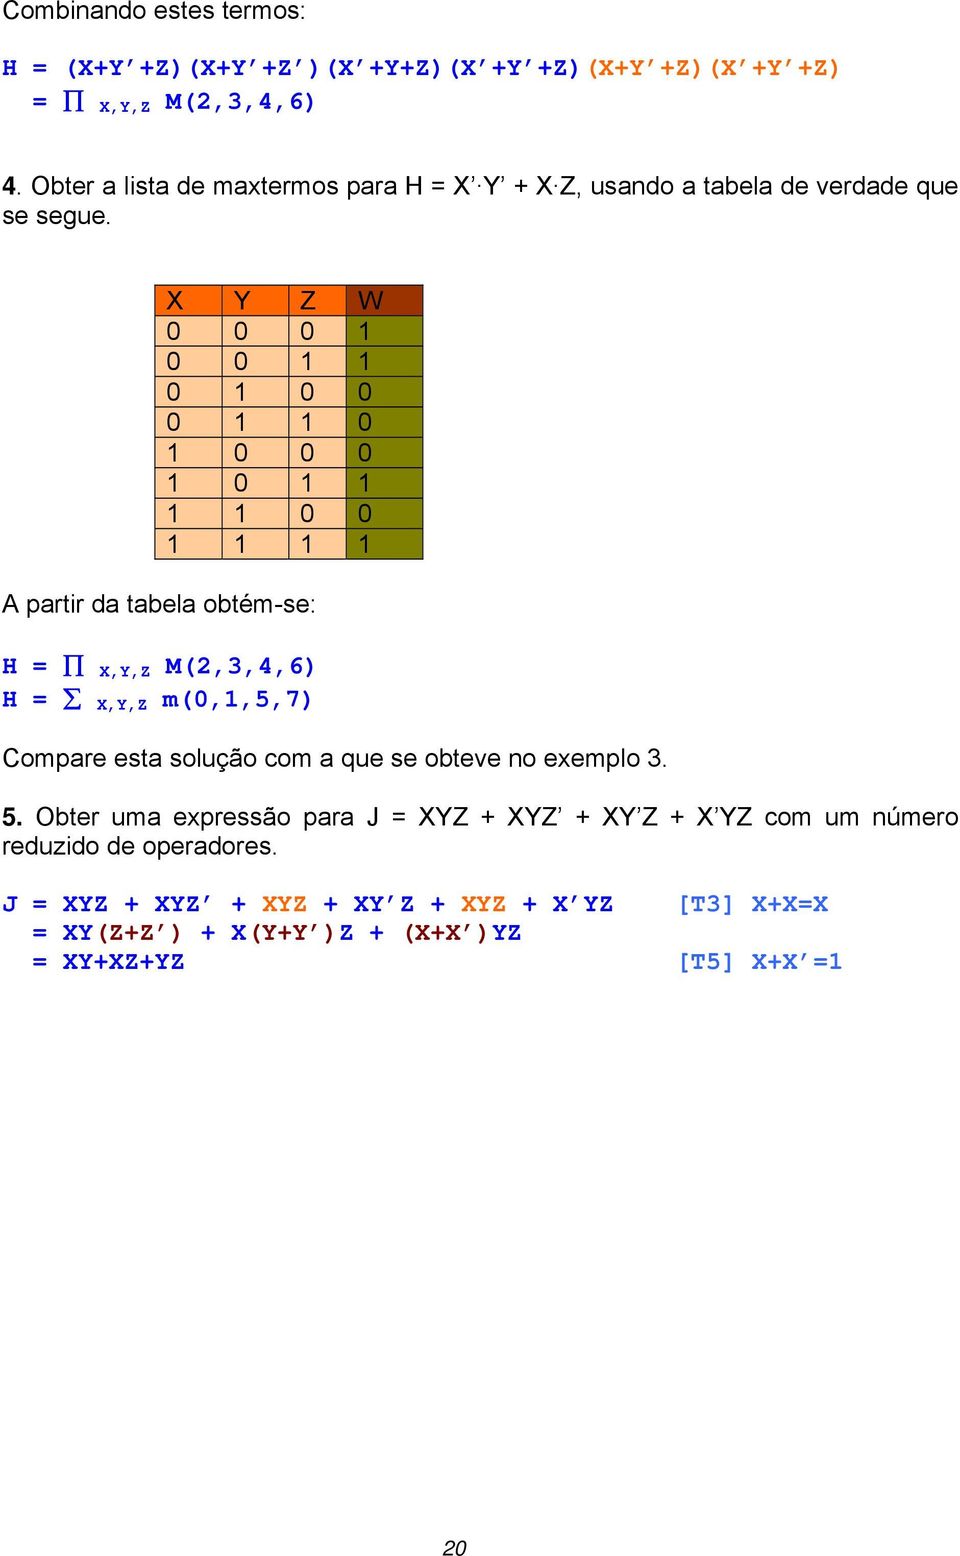 X Y Z W 0 0 0 1 0 0 1 1 0 1 0 0 0 1 1 0 1 0 0 0 1 0 1 1 1 1 0 0 1 1 1 1 A partir da tabela obtém-se: H = X,Y,Z M(2,3,4,6) H = X,Y,Z m(0,1,5,7)